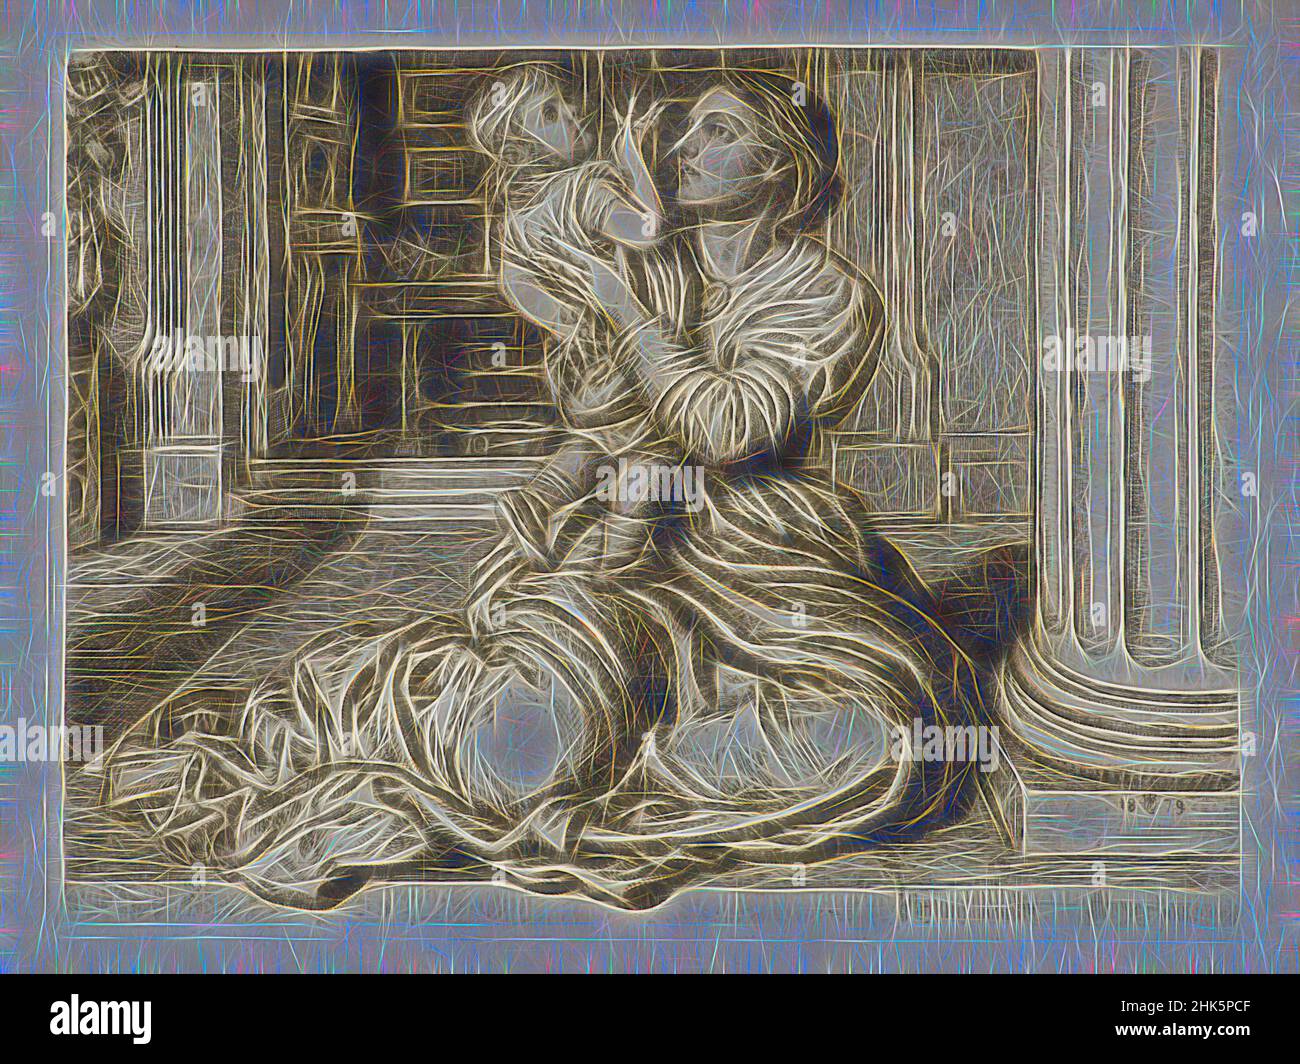 Inspiriert von der Beurlaubung des Vaters, William Holman Hunt, Englisch, 1827–1910, 1879, Radierung und Trockenstelle, hergestellt in London, Greater London, England, Europa, Abzüge, Platte: 7 3/8 x 9 7/8 Zoll (18,7 x 25,1 cm, neu erfunden von Artotop. Klassische Kunst neu erfunden mit einem modernen Twist. Design von warmen fröhlichen Leuchten der Helligkeit und Lichtstrahl Strahlkraft. Fotografie inspiriert von Surrealismus und Futurismus, umarmt dynamische Energie der modernen Technologie, Bewegung, Geschwindigkeit und Kultur zu revolutionieren Stockfoto